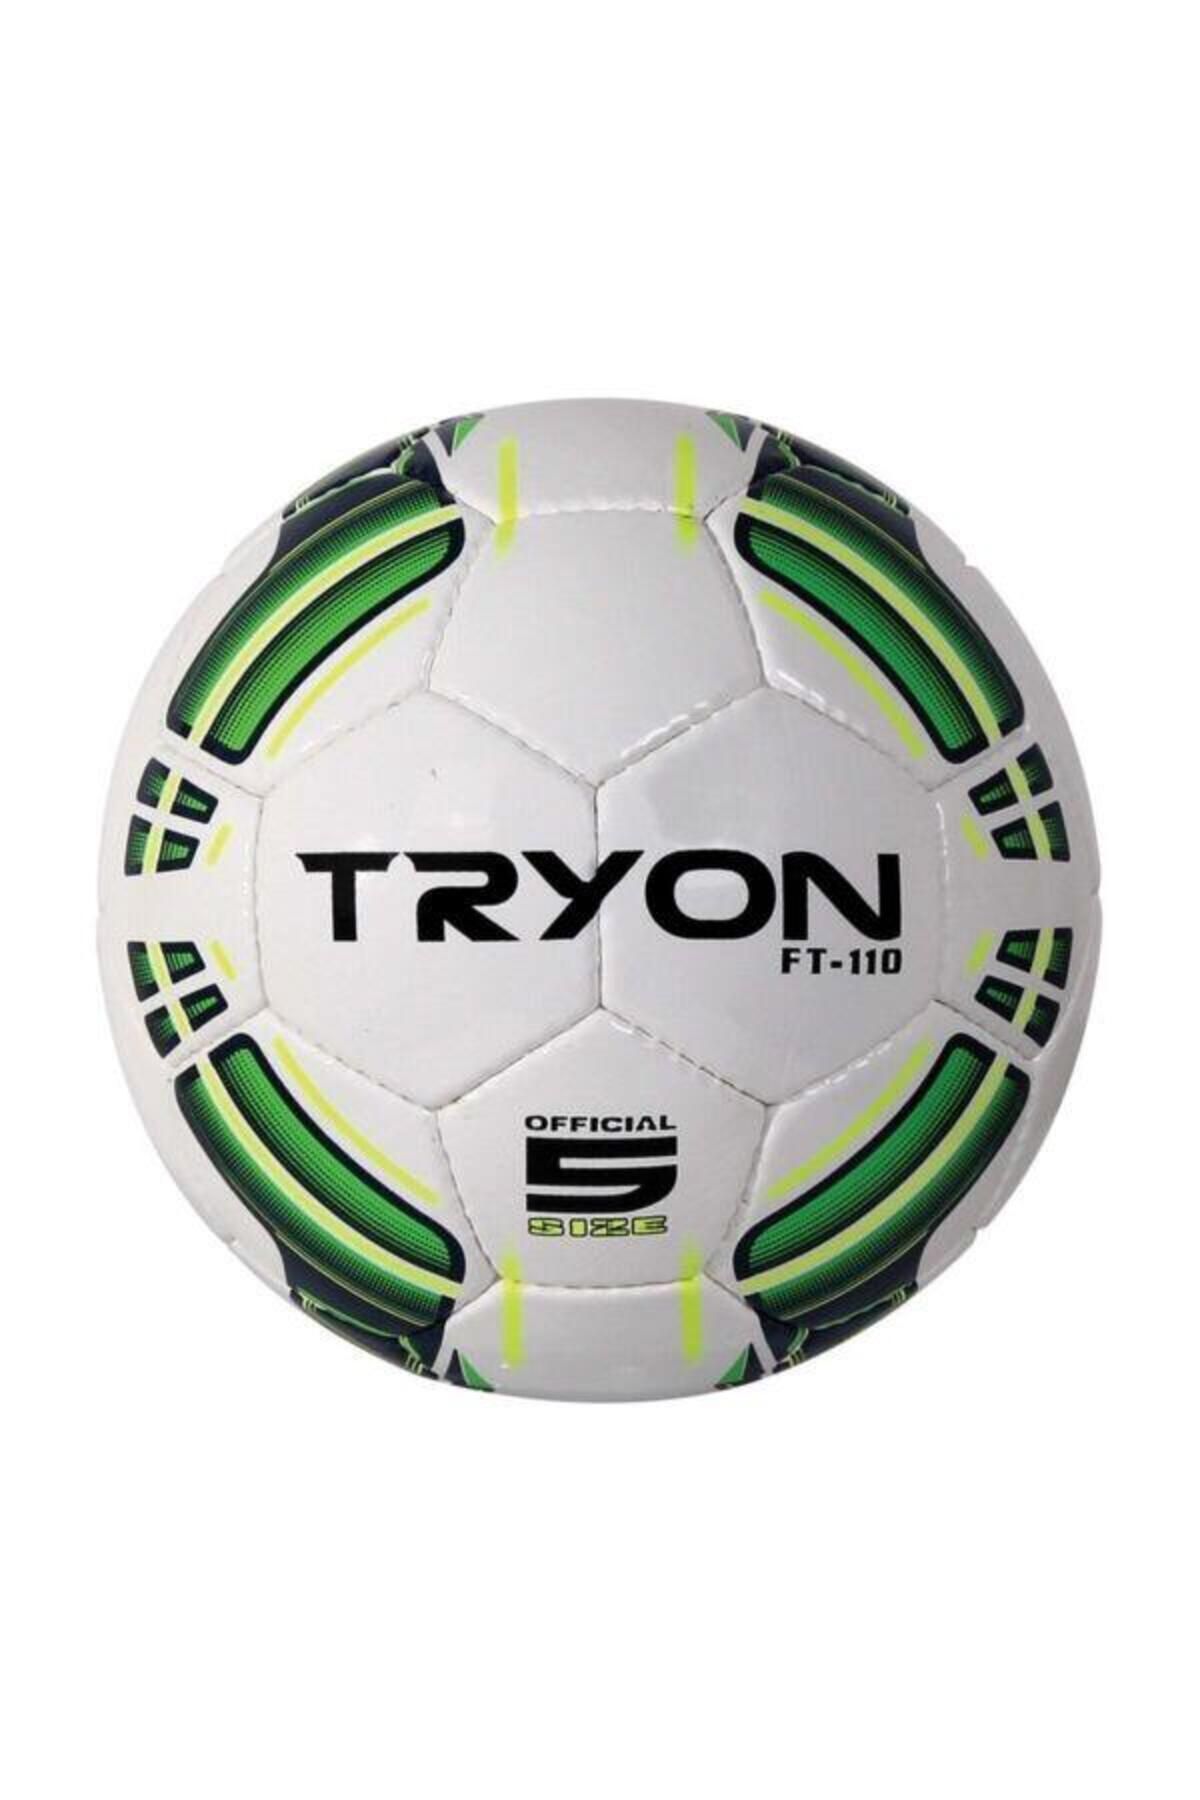 TRYON Ft-110 Beyaz Futbol Topu